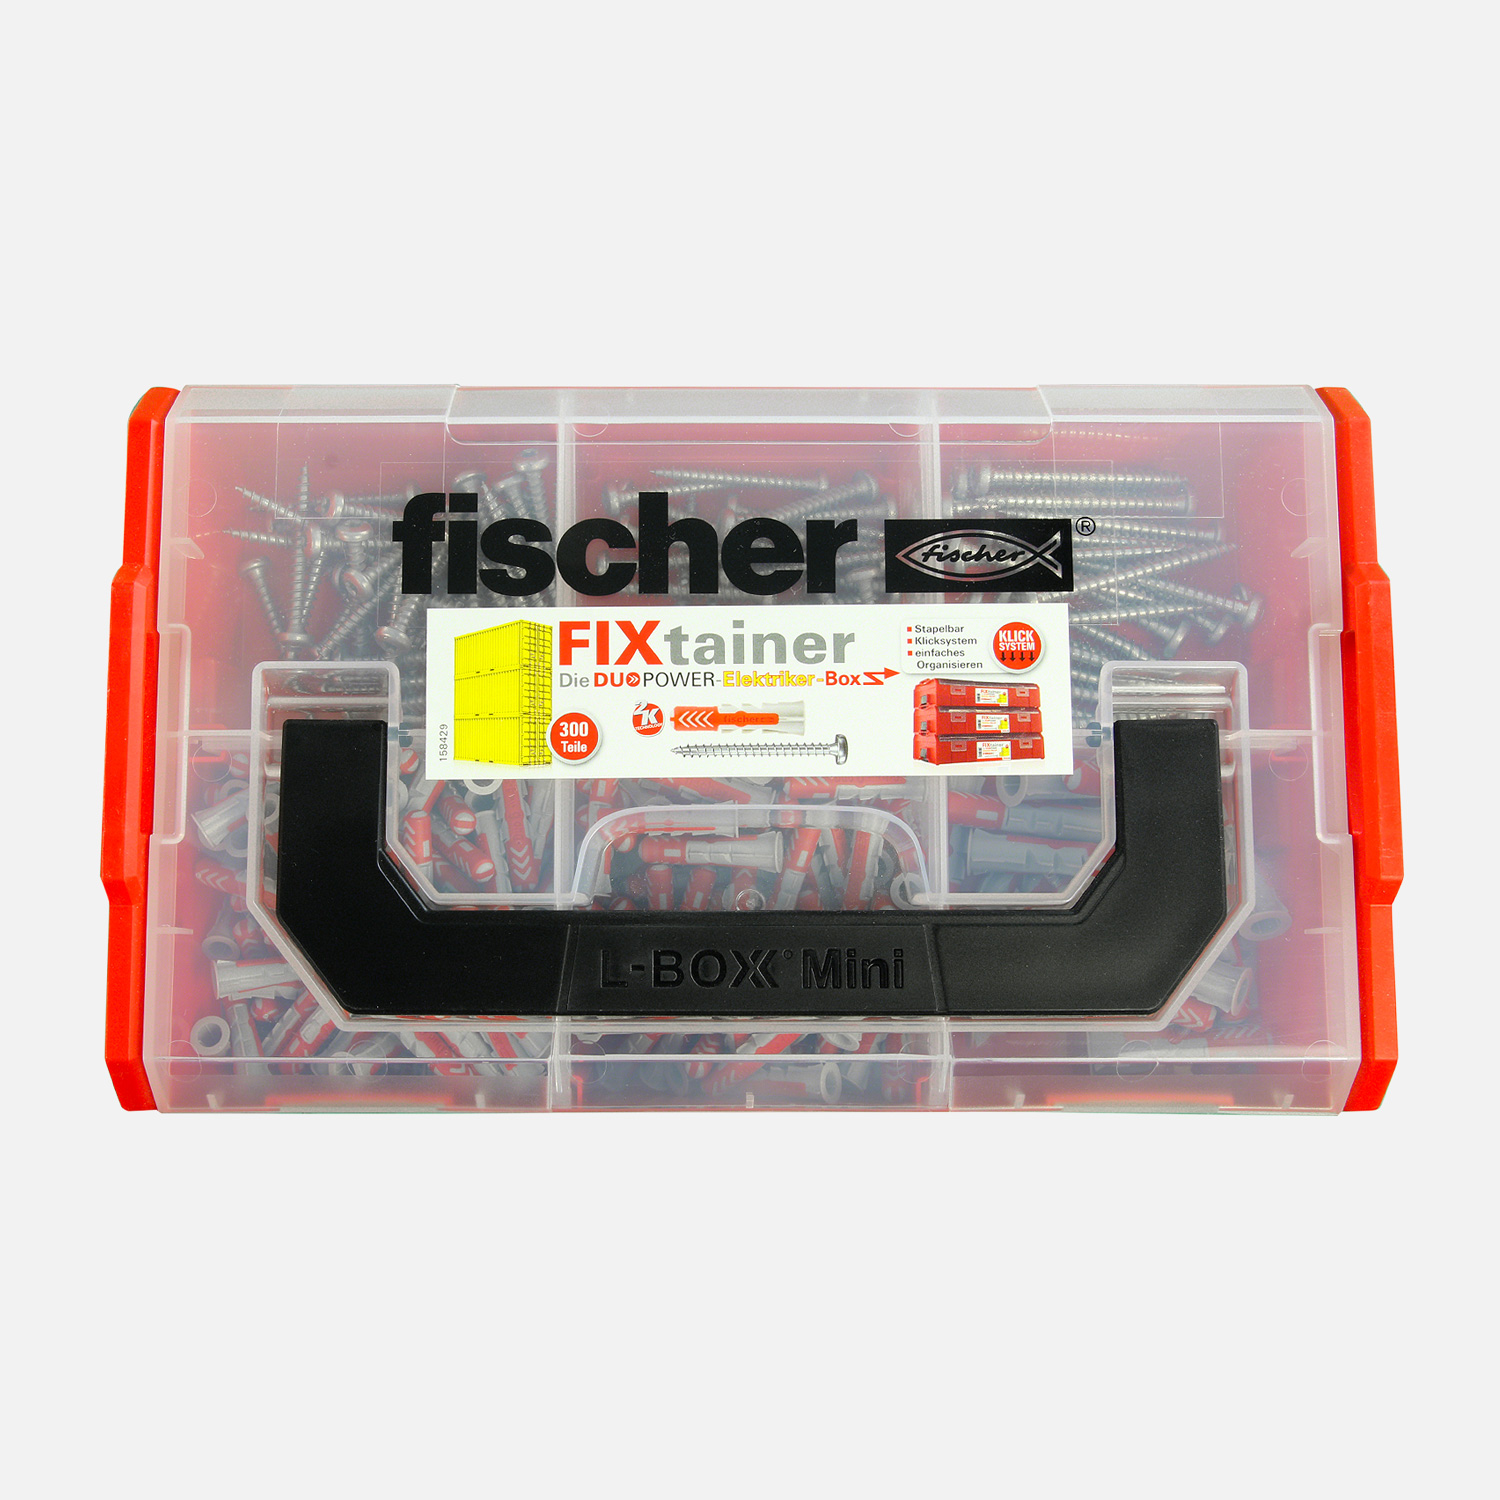 300 tlg. FISCHER FIXtainer - DUOPOWER + Schrauben Elektriker-Sortiment 6 + 8 mm